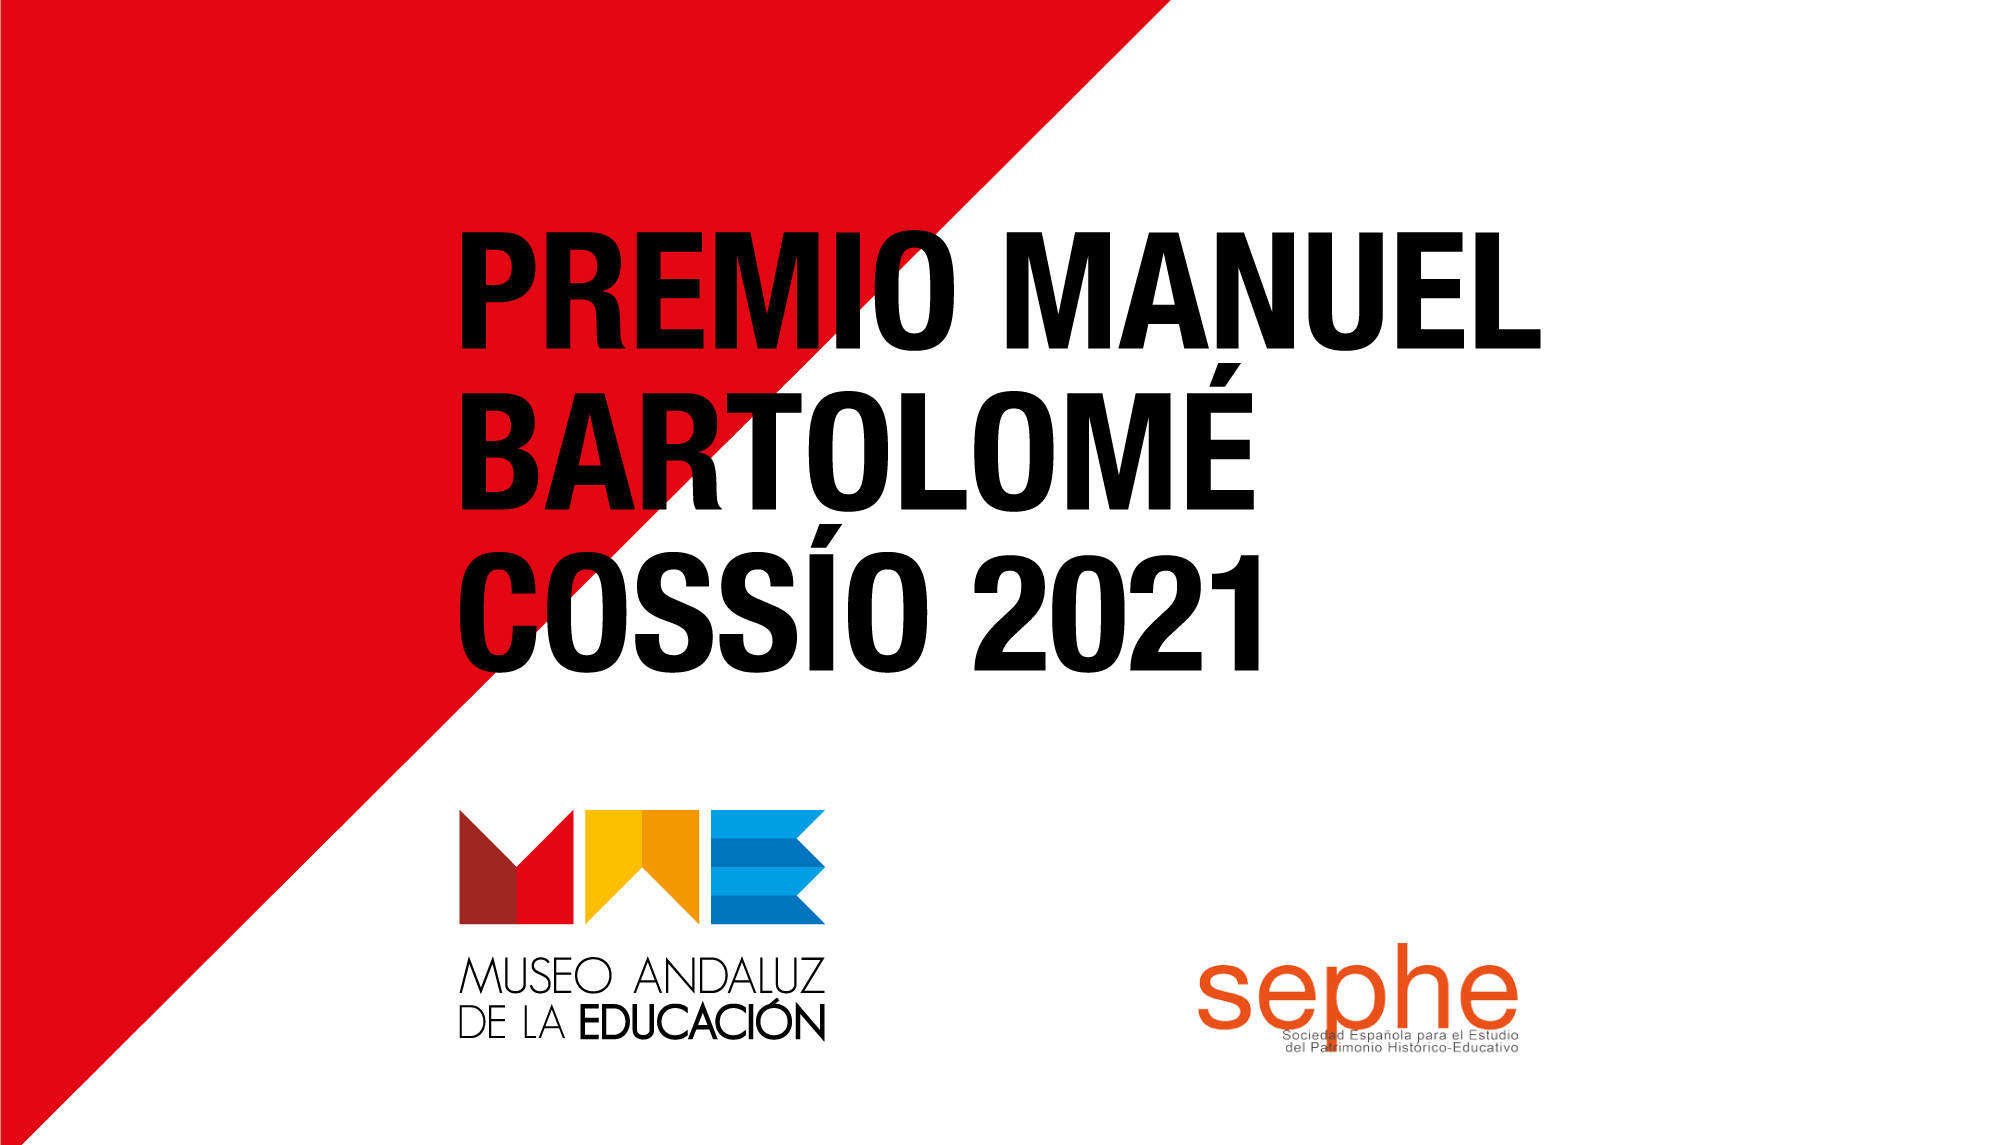 El MAE ha sido reconocido con el premio Manuel Bartolomé Cossío 2021